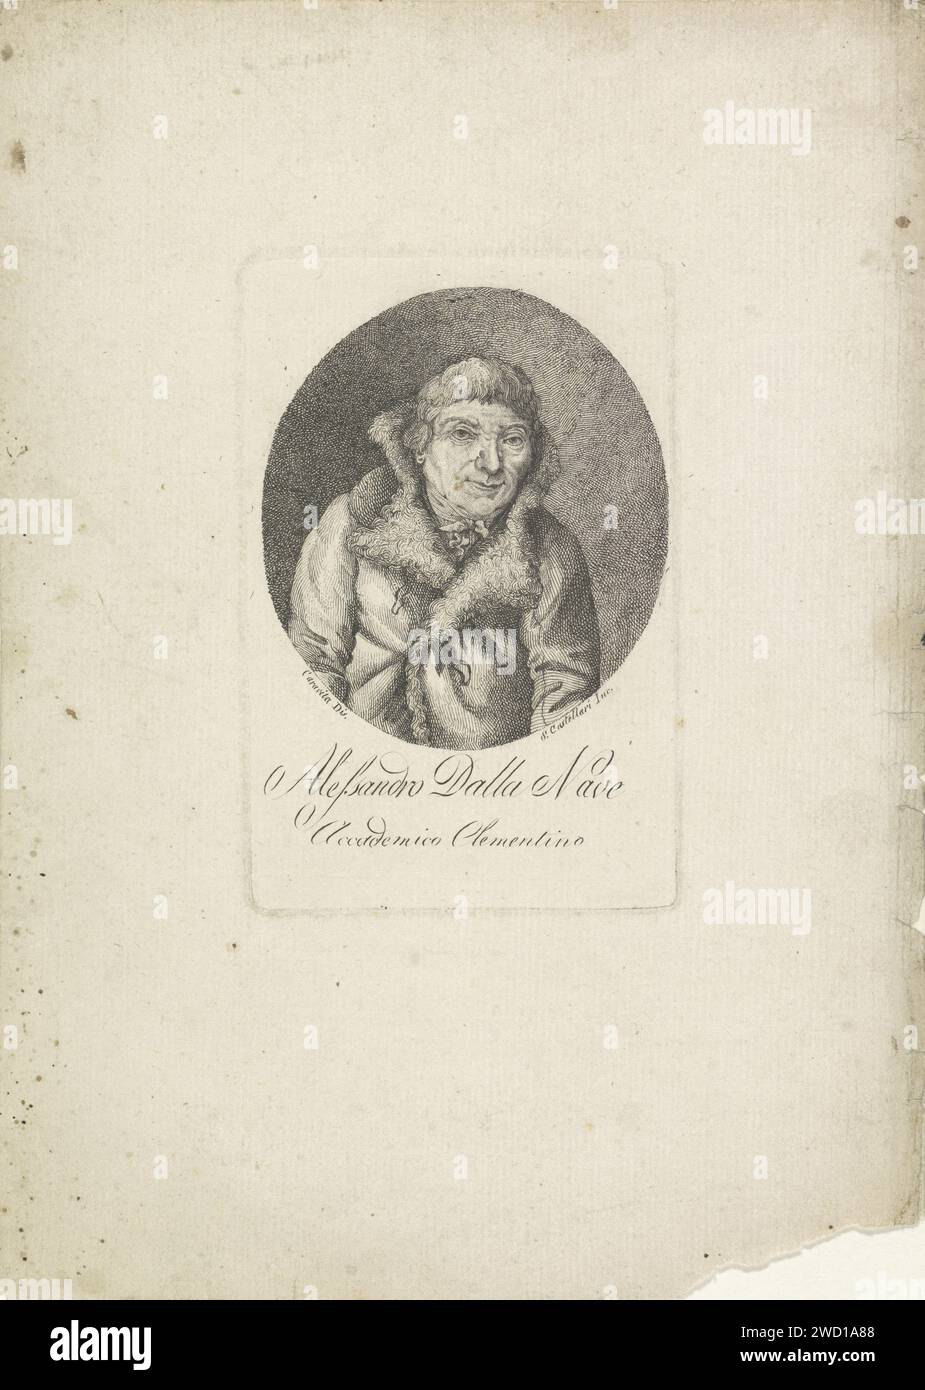 Portret Van Schilder Alessandro dalla nave, S. Castellari, dopo Caravita, c. 1750 - c. 1850 stampa Italia carta incisione persone storiche. ritratto, autoritratto dell'artista Foto Stock